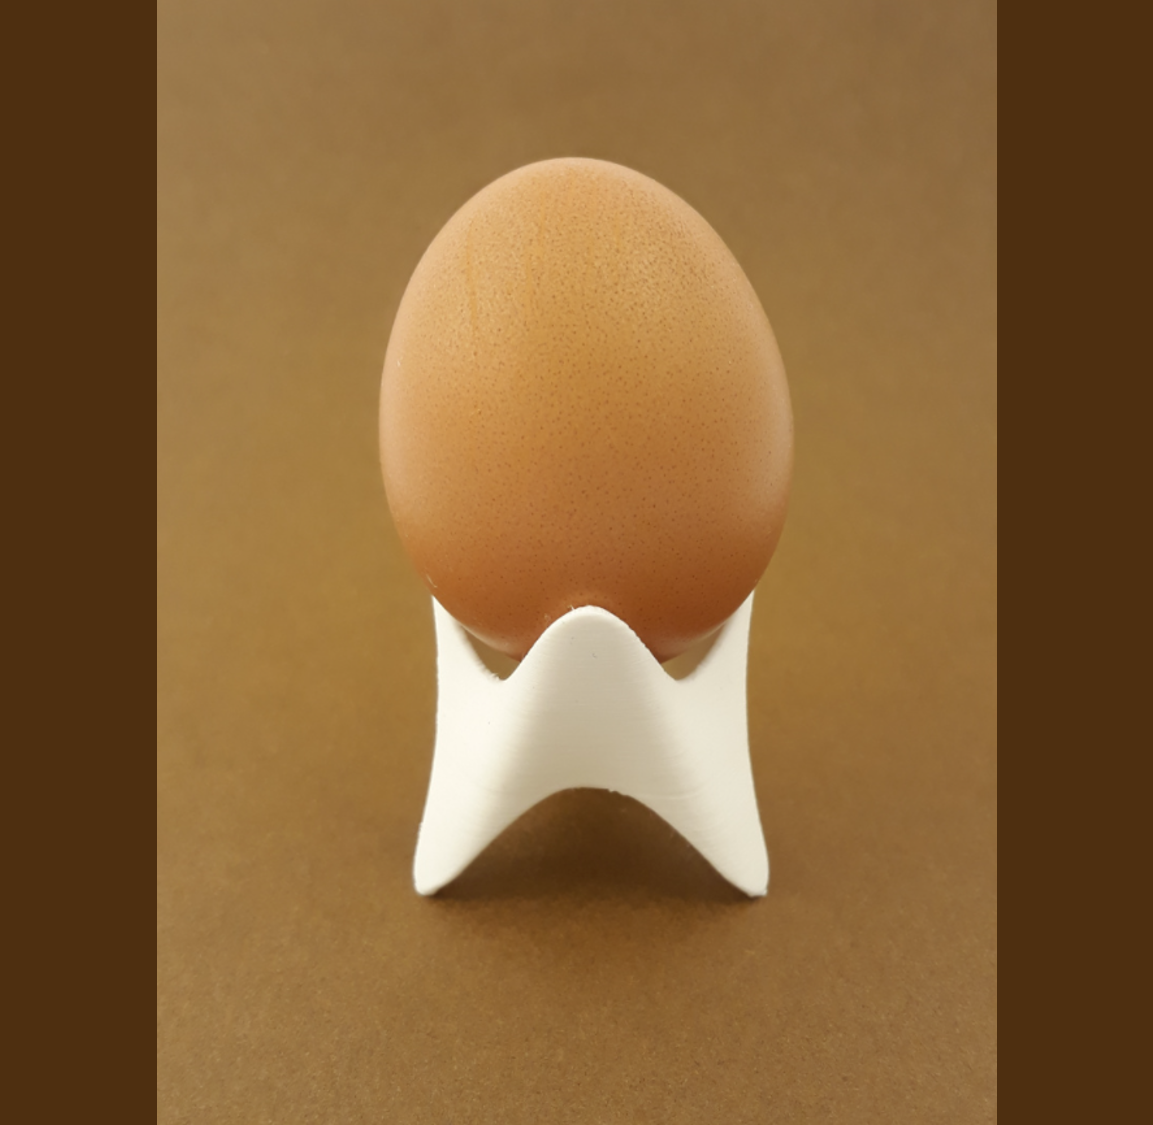 Egg stand / holder